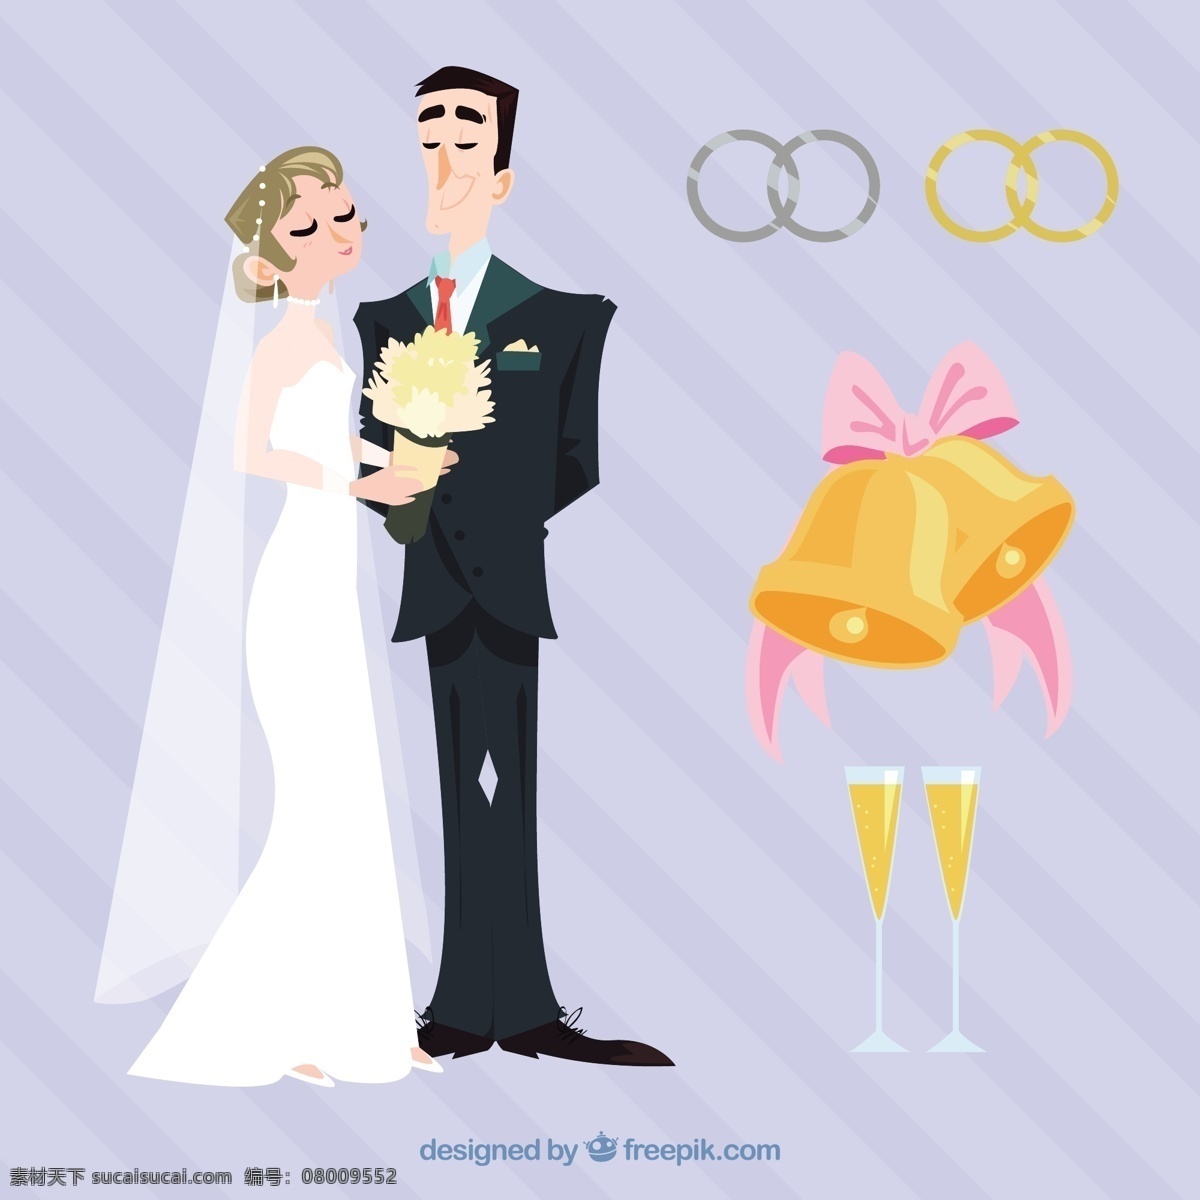 新婚 夫妇 婚礼 元素 矢量 新婚夫妇 婚礼元素 矢量素材